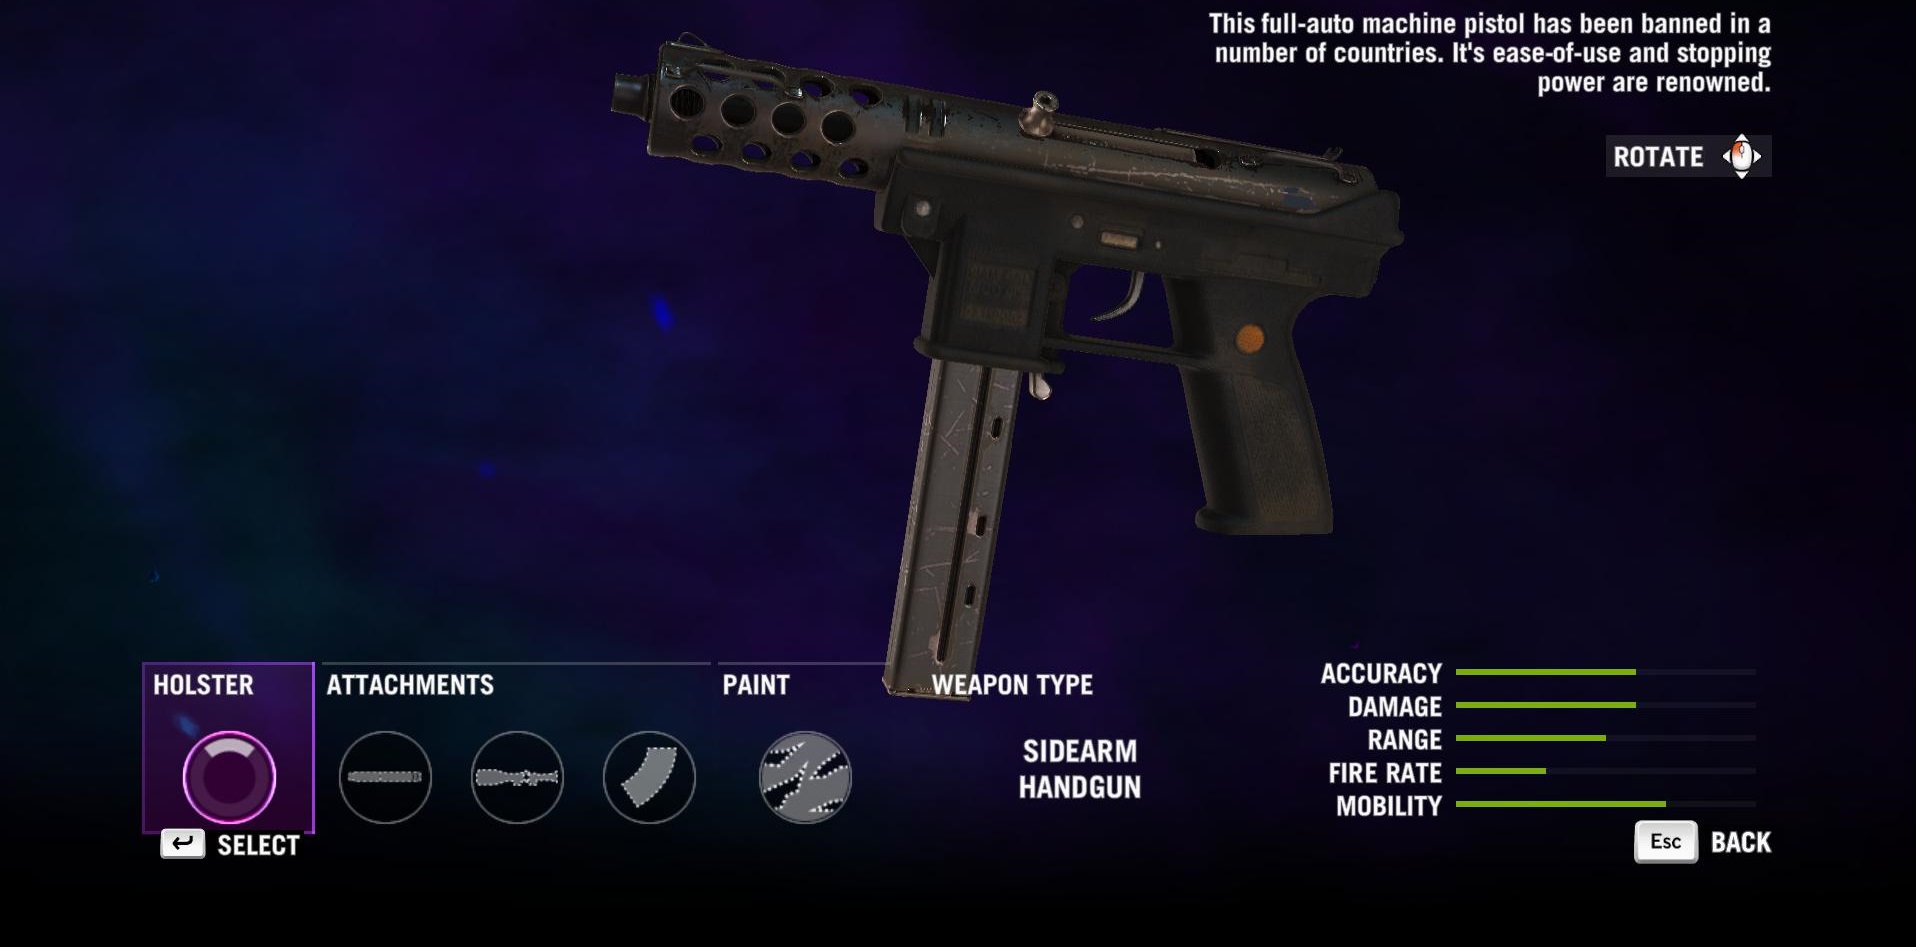 Far Cry 3 Gun Slots